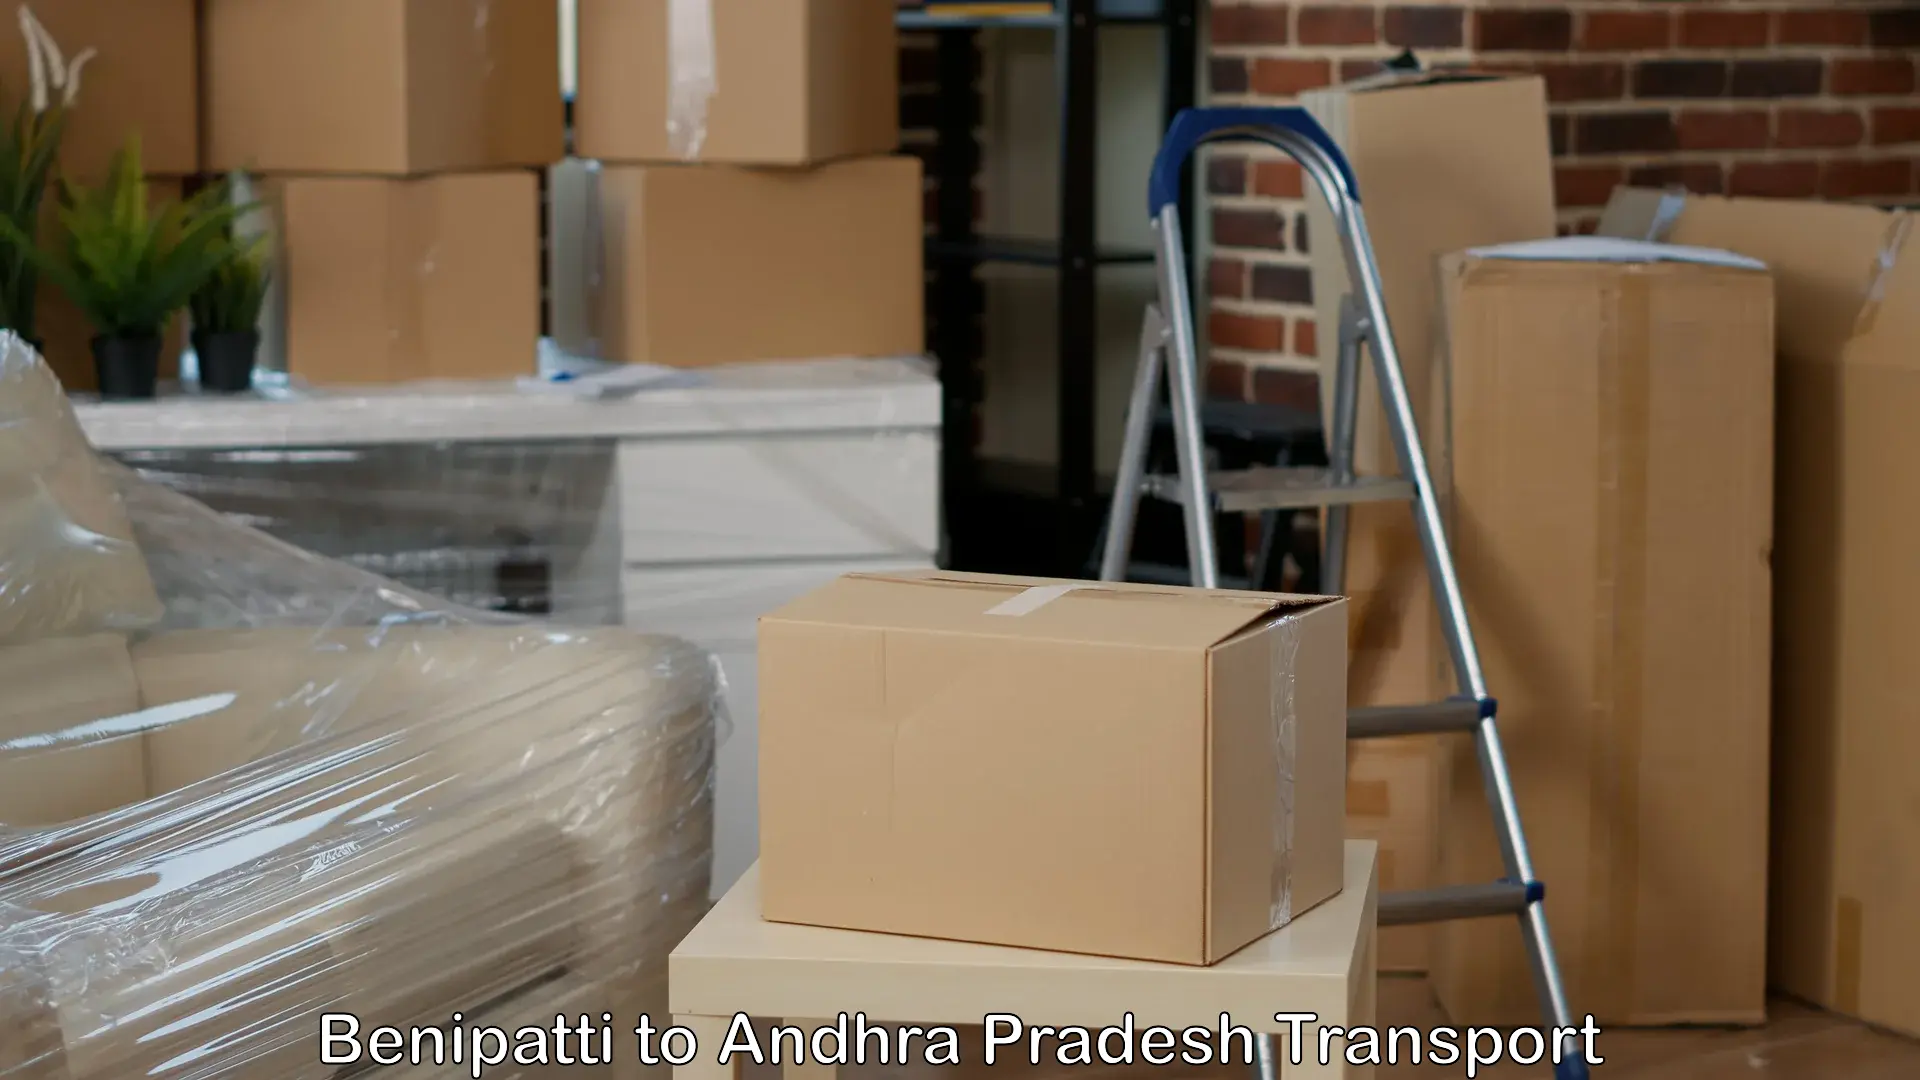 India truck logistics services Benipatti to Vijayawada